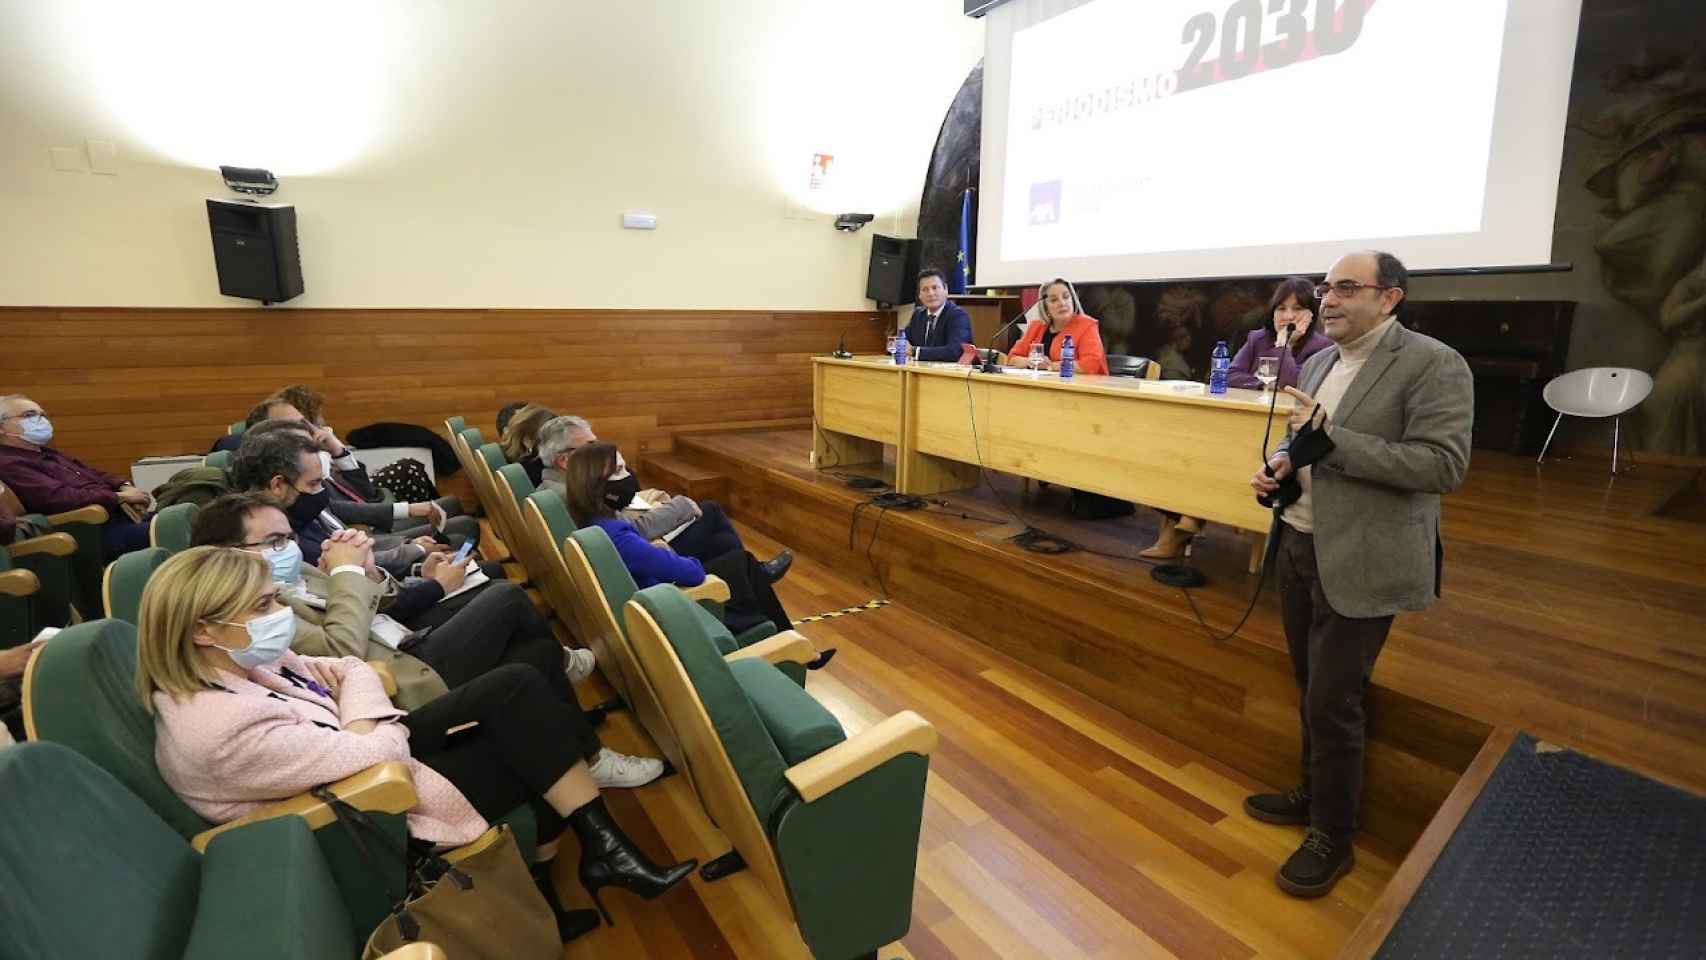 El director de EL ESPAÑOL-EL DIGITAL CLM Eusebio Cedena interviniendo en el encuentro. Foto: Óscar Huertas